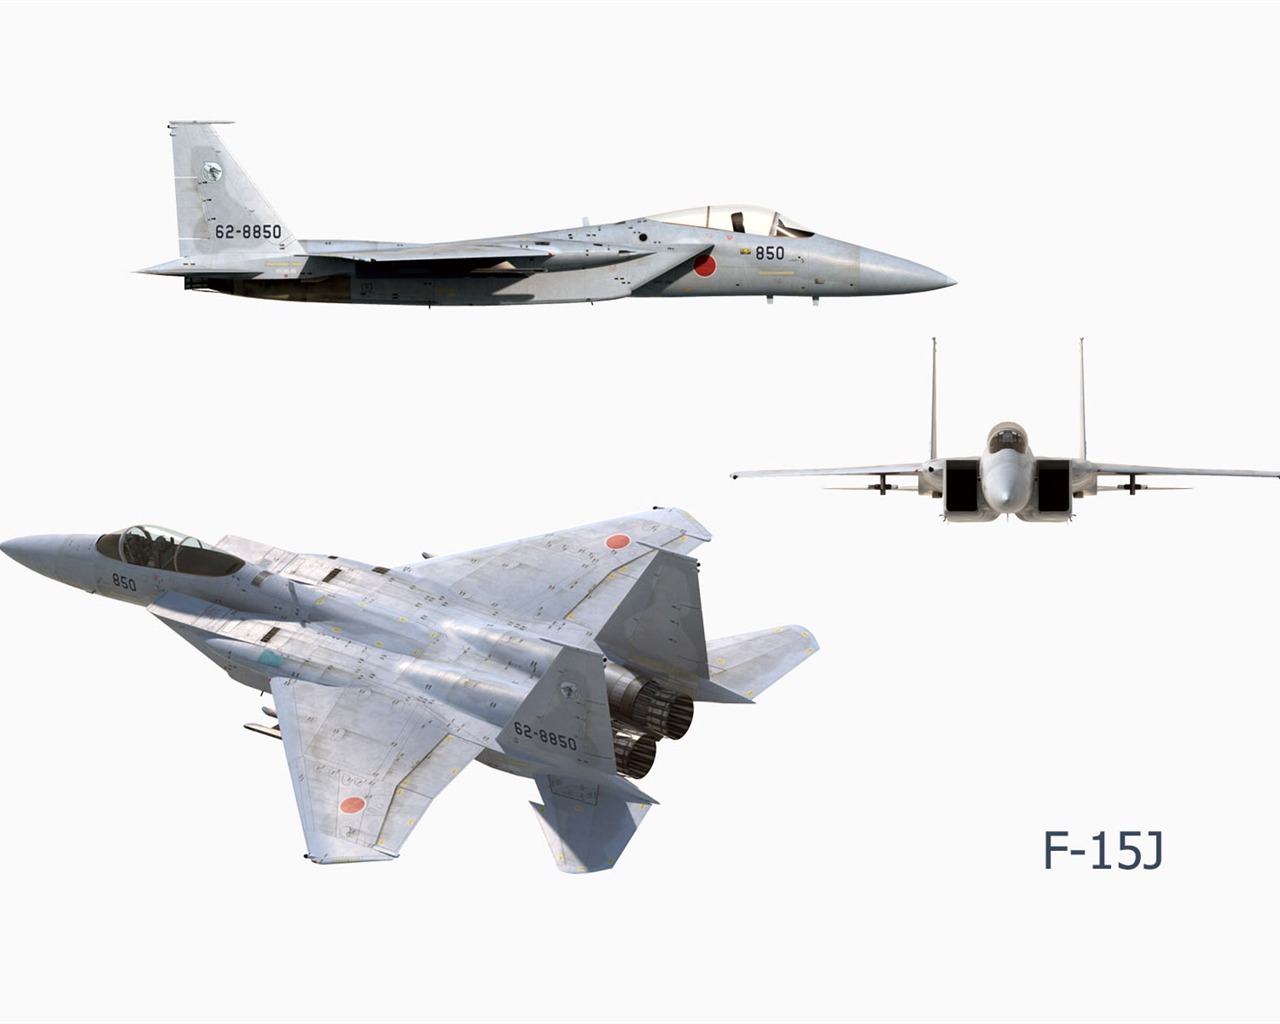 CG fondos de escritorio de aviones militares #22 - 1280x1024